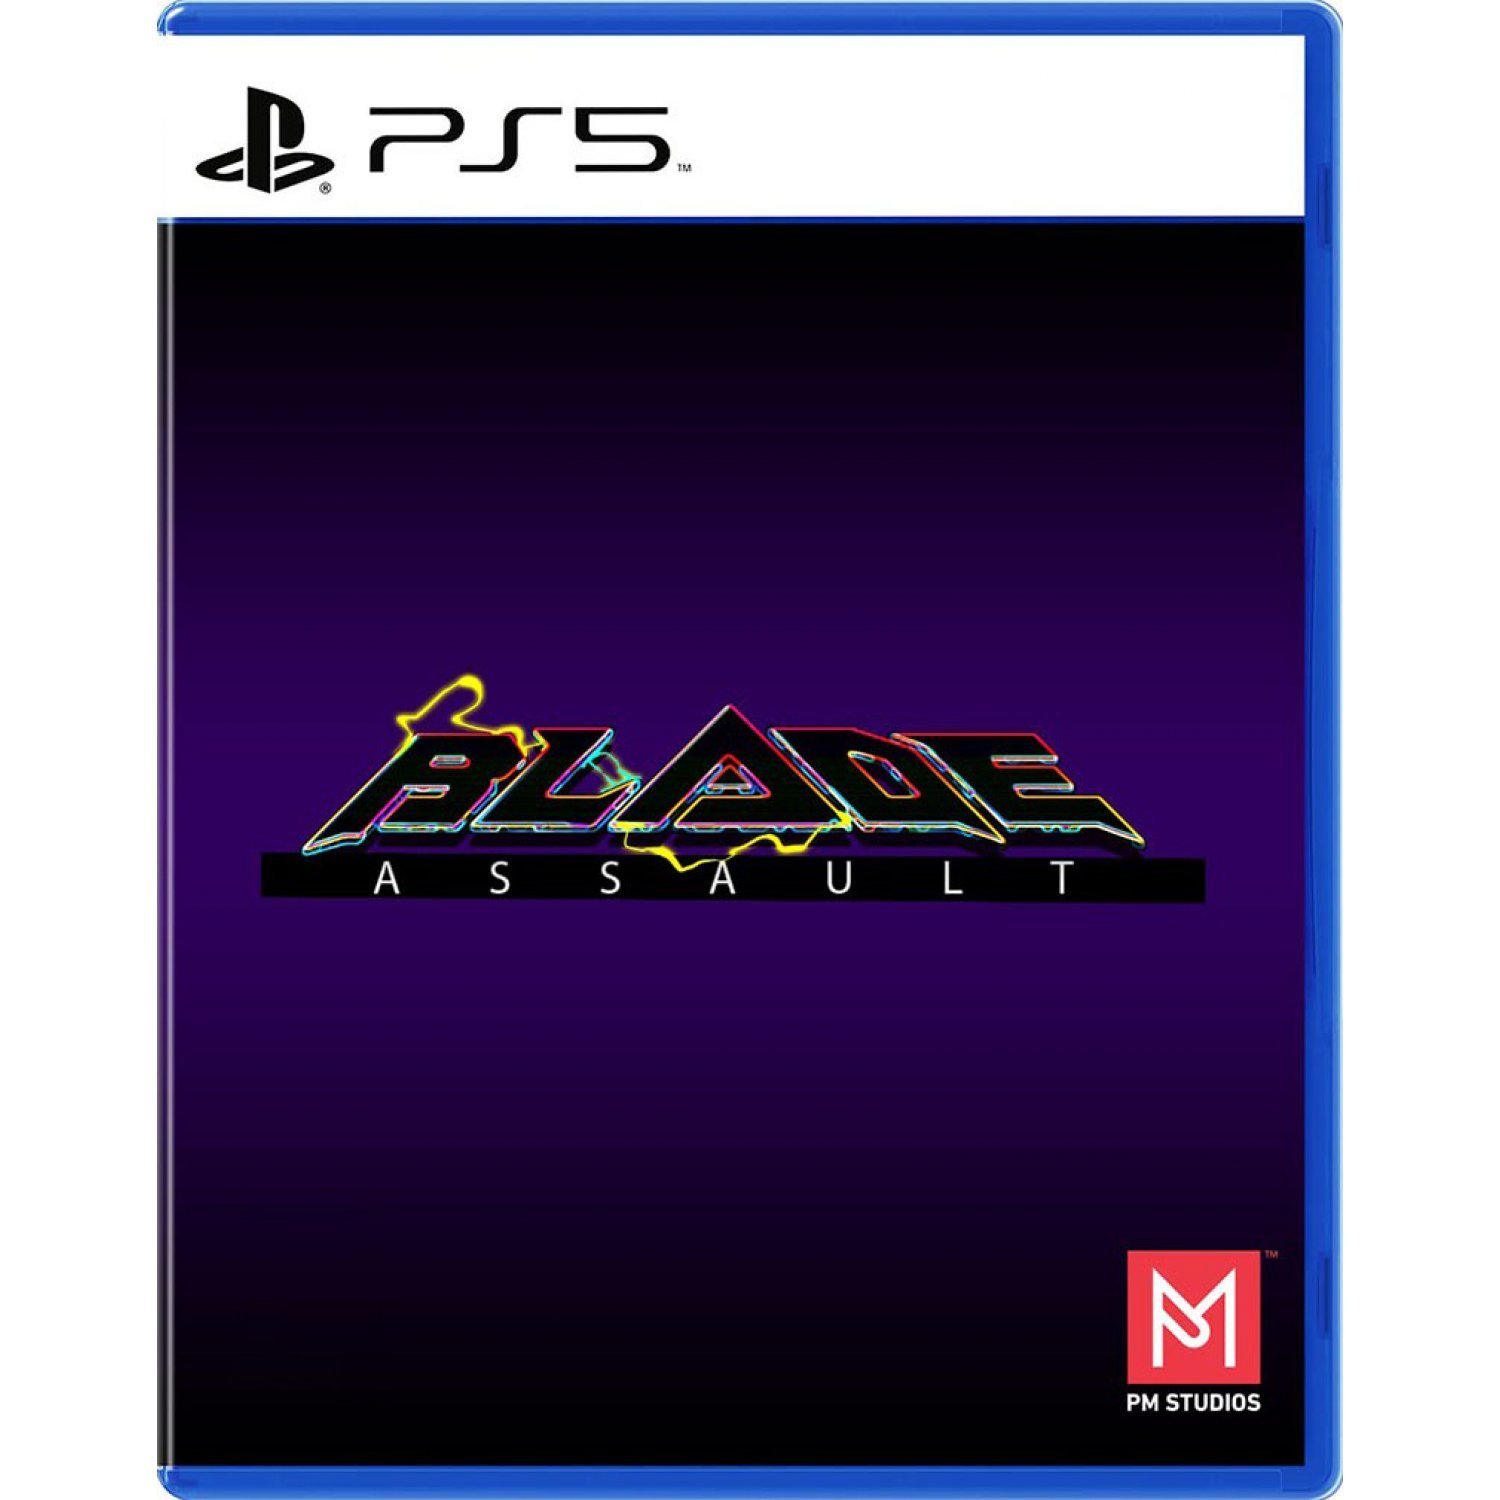 Blade Assault von PM Studios